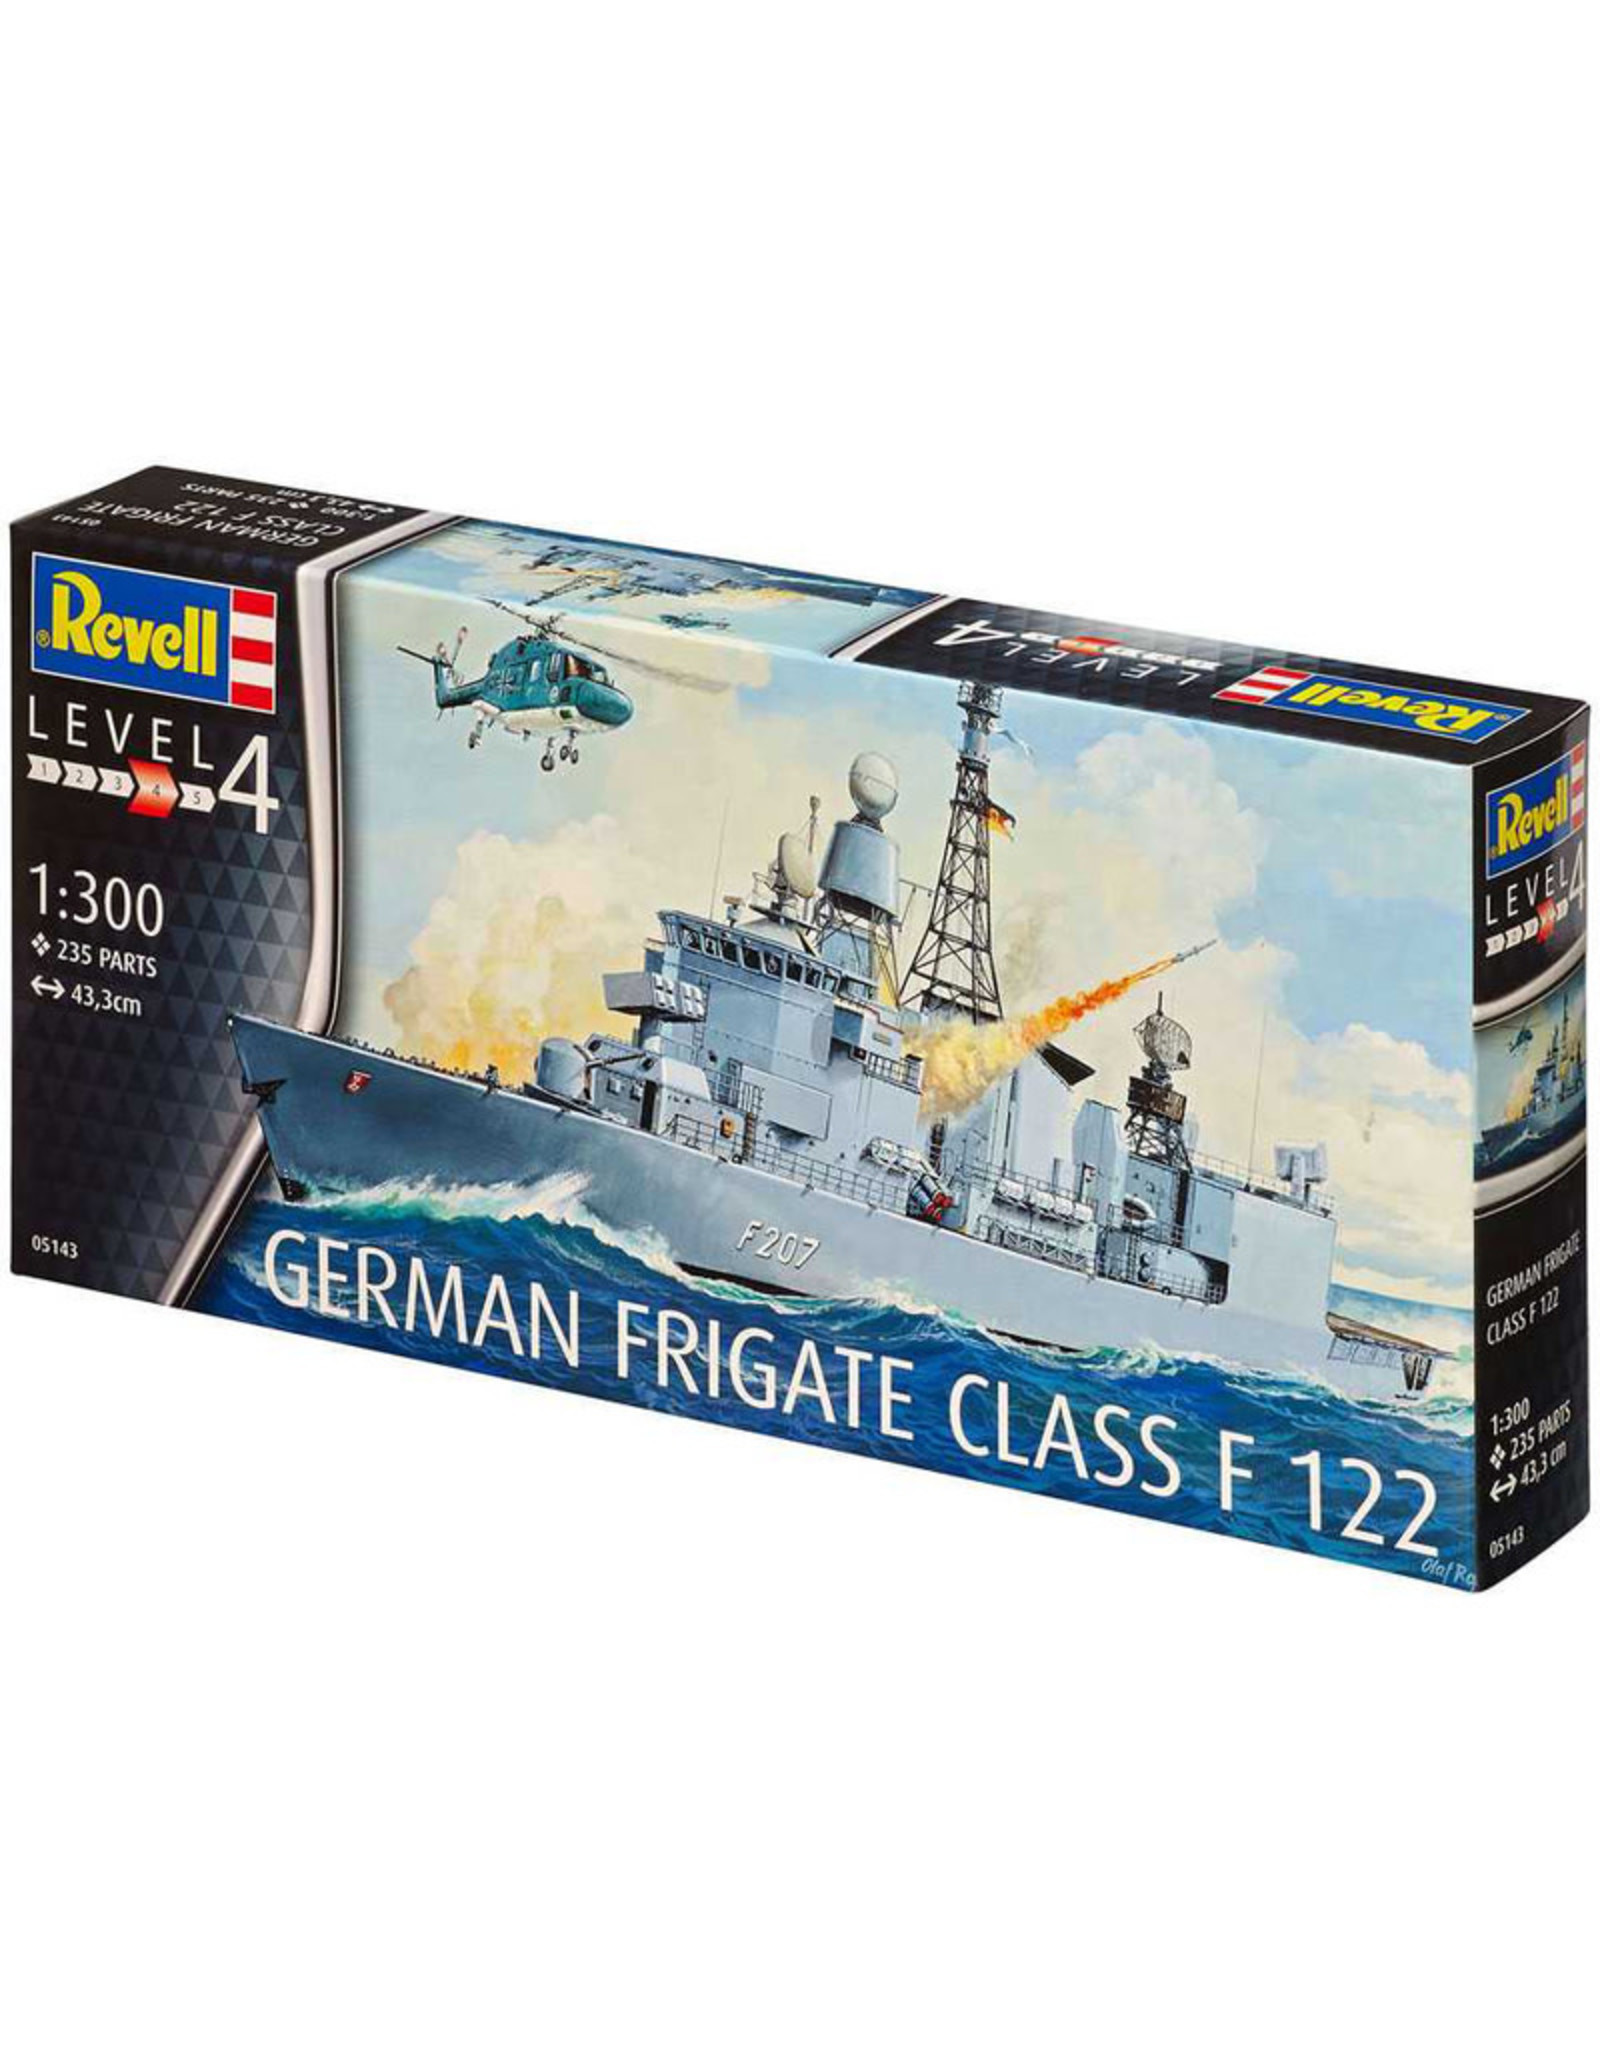 Revell German Frigate class F 122